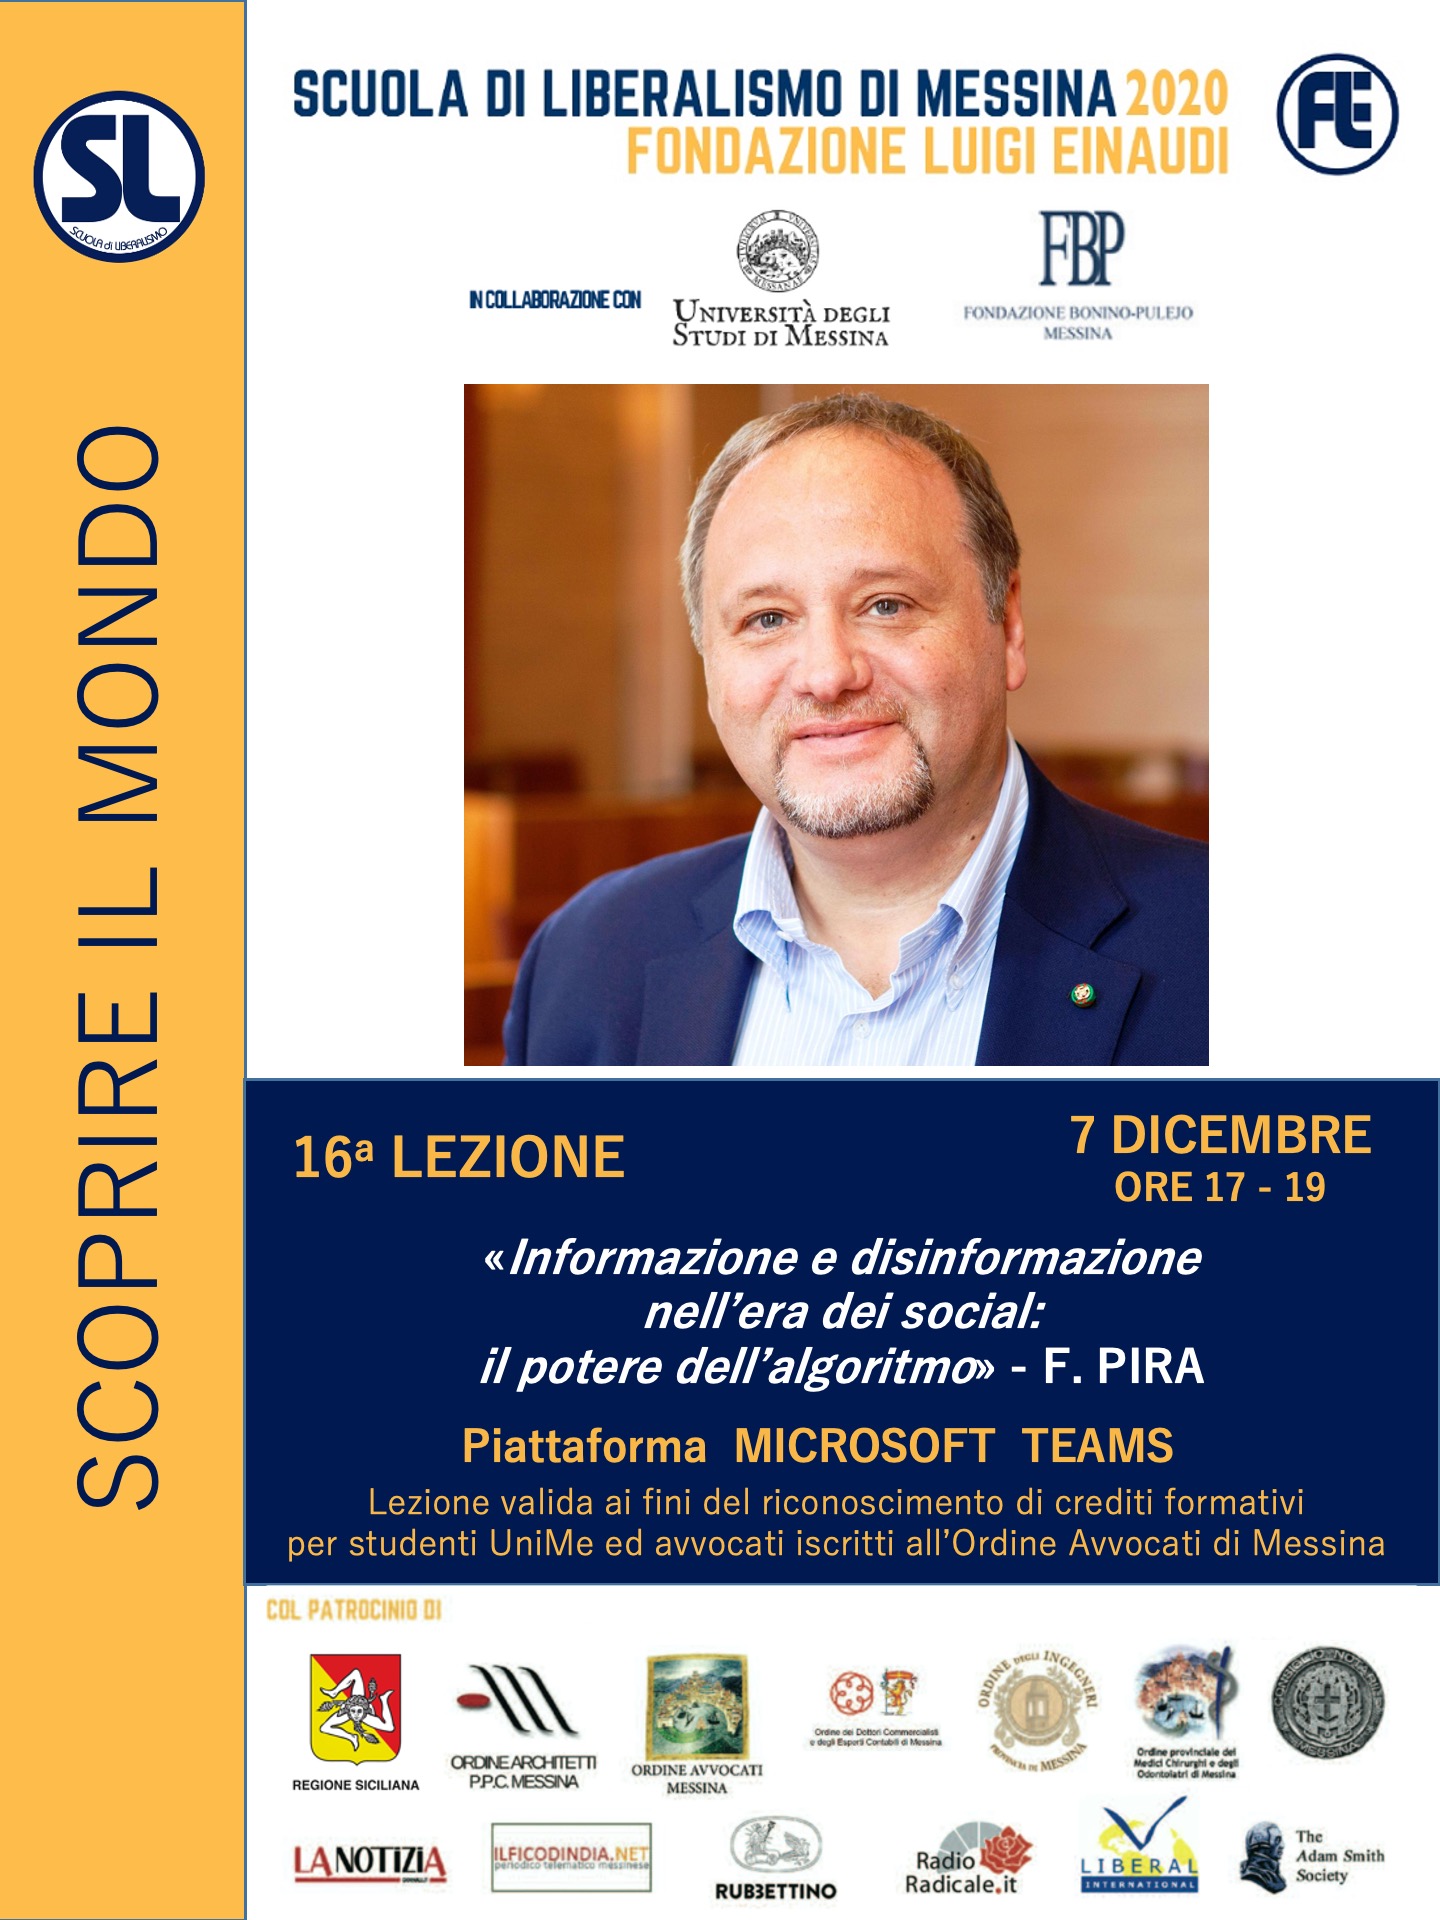 Scuola di Liberalismo 2020 Messina: 7 dicembre lezione di Francesco Pira